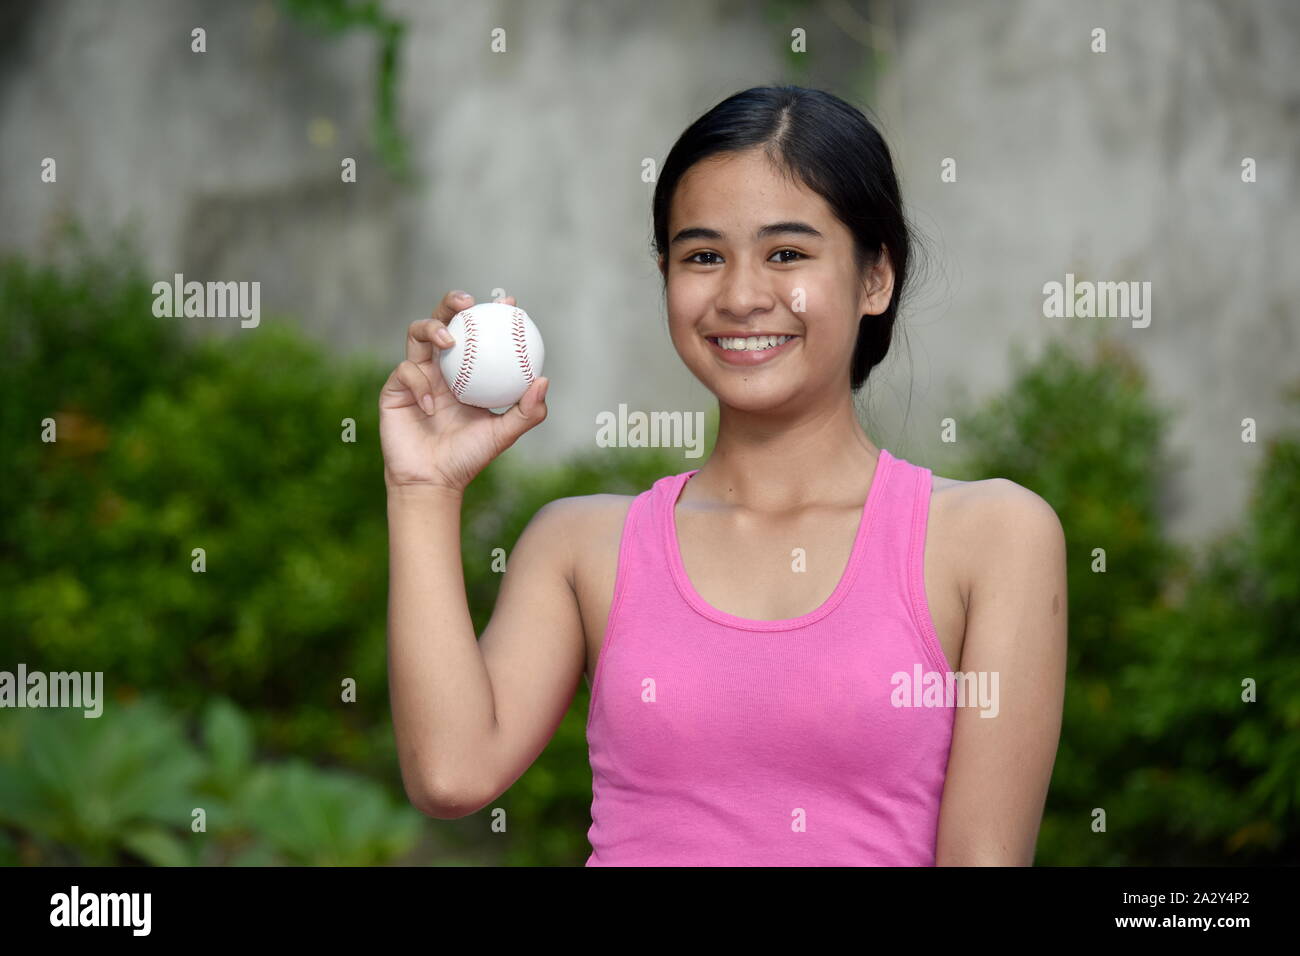 Smiling Athlete Minority Female Baseball Player Stock Photo